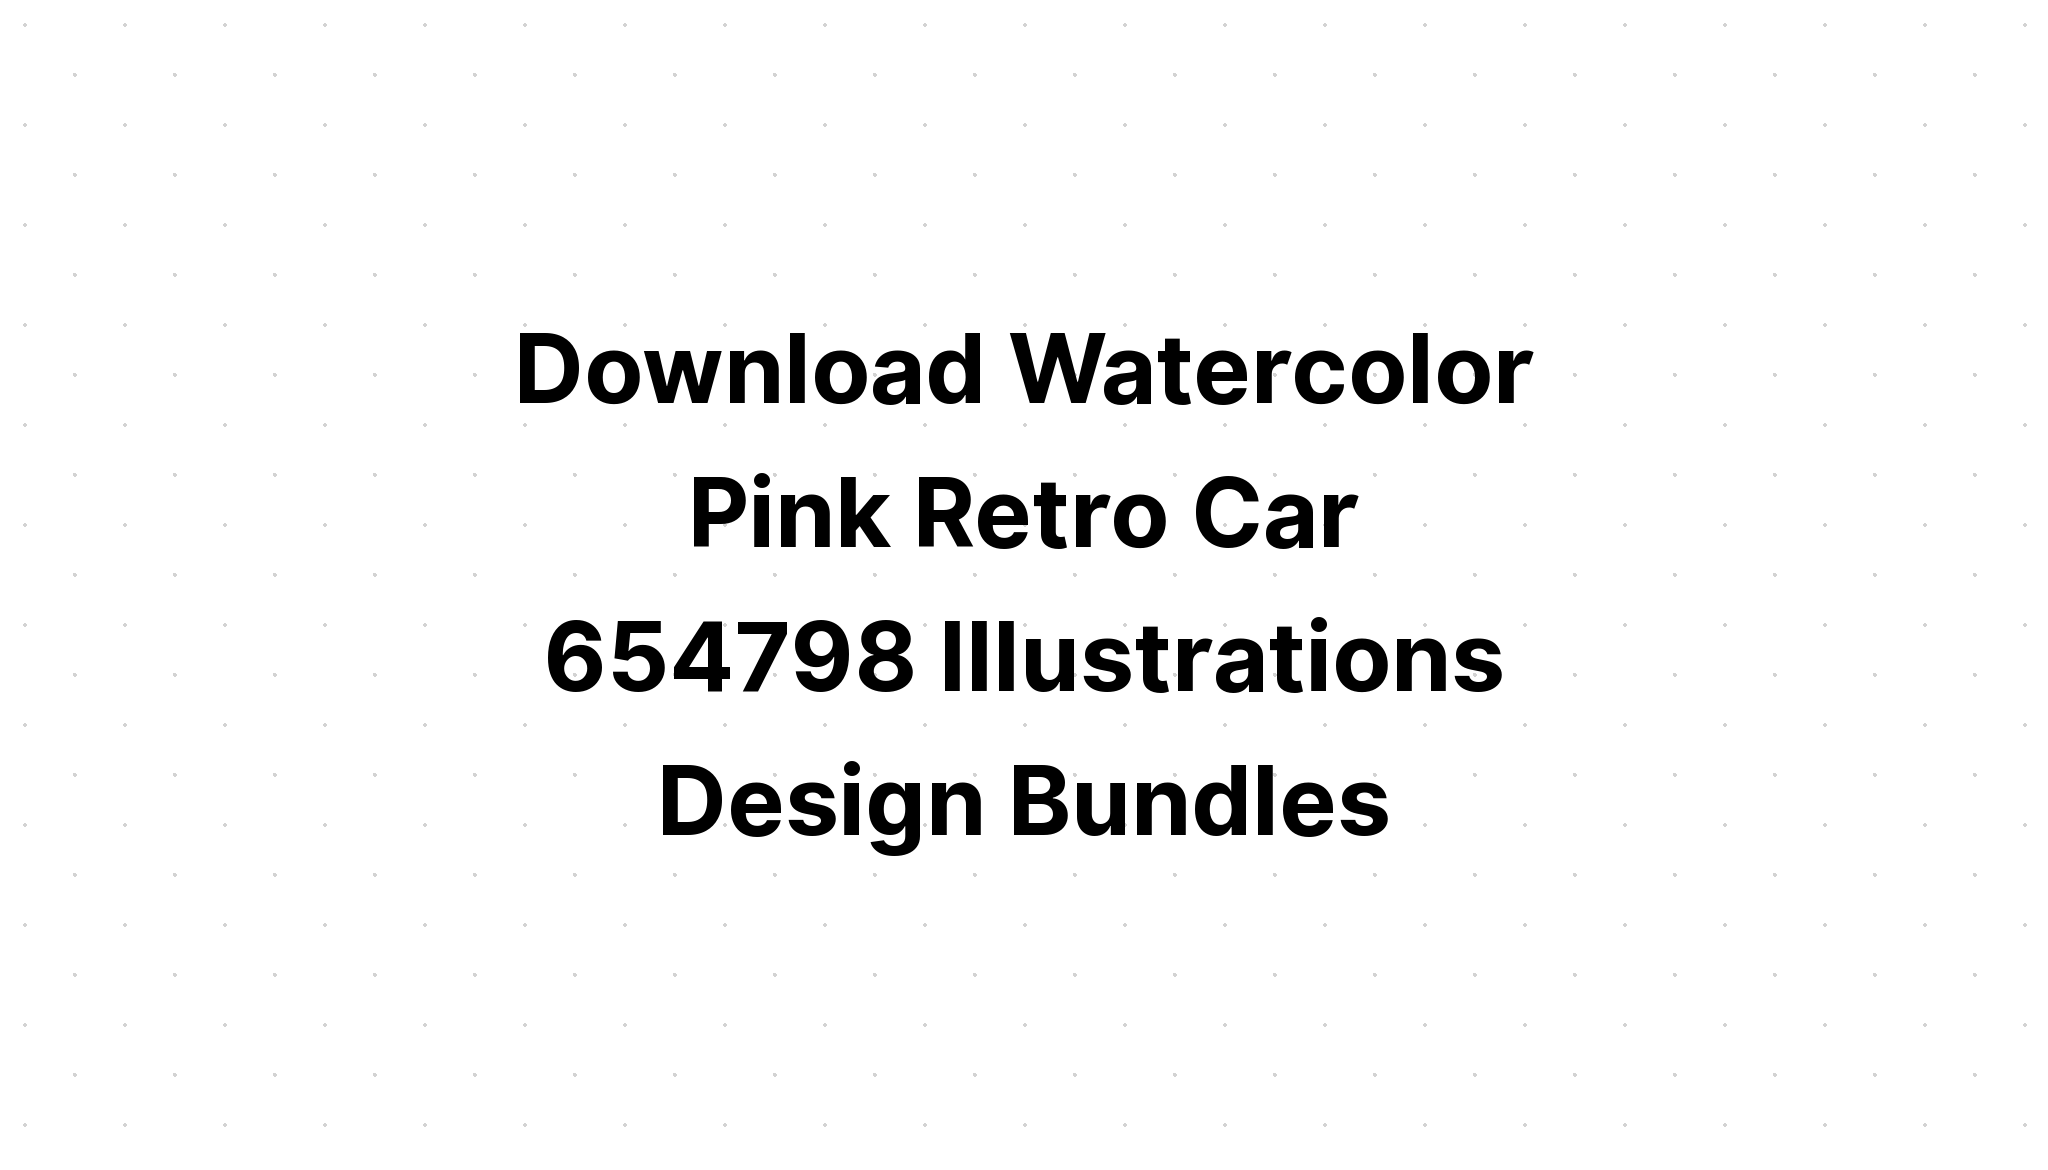 Download Watercolor Pink Vintage Car Back SVG File